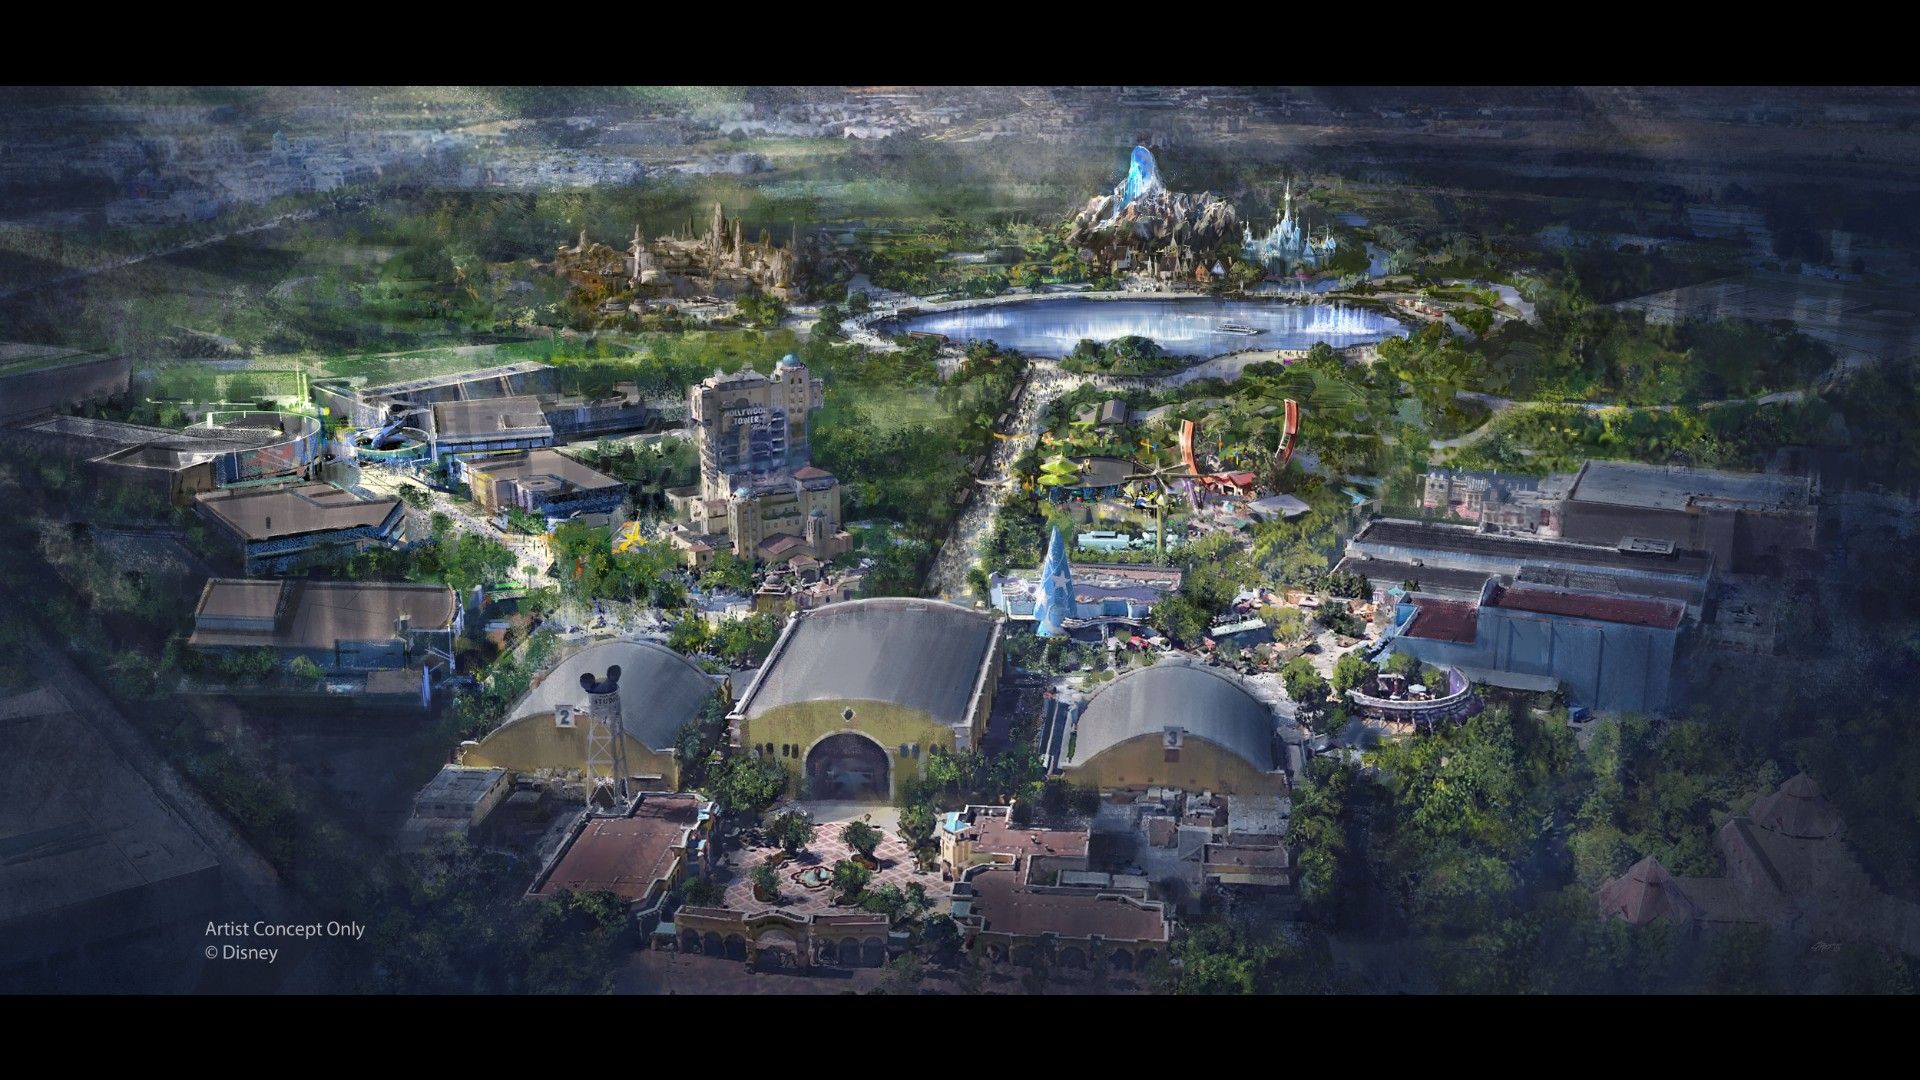 Disneyland Paris expansion concept art